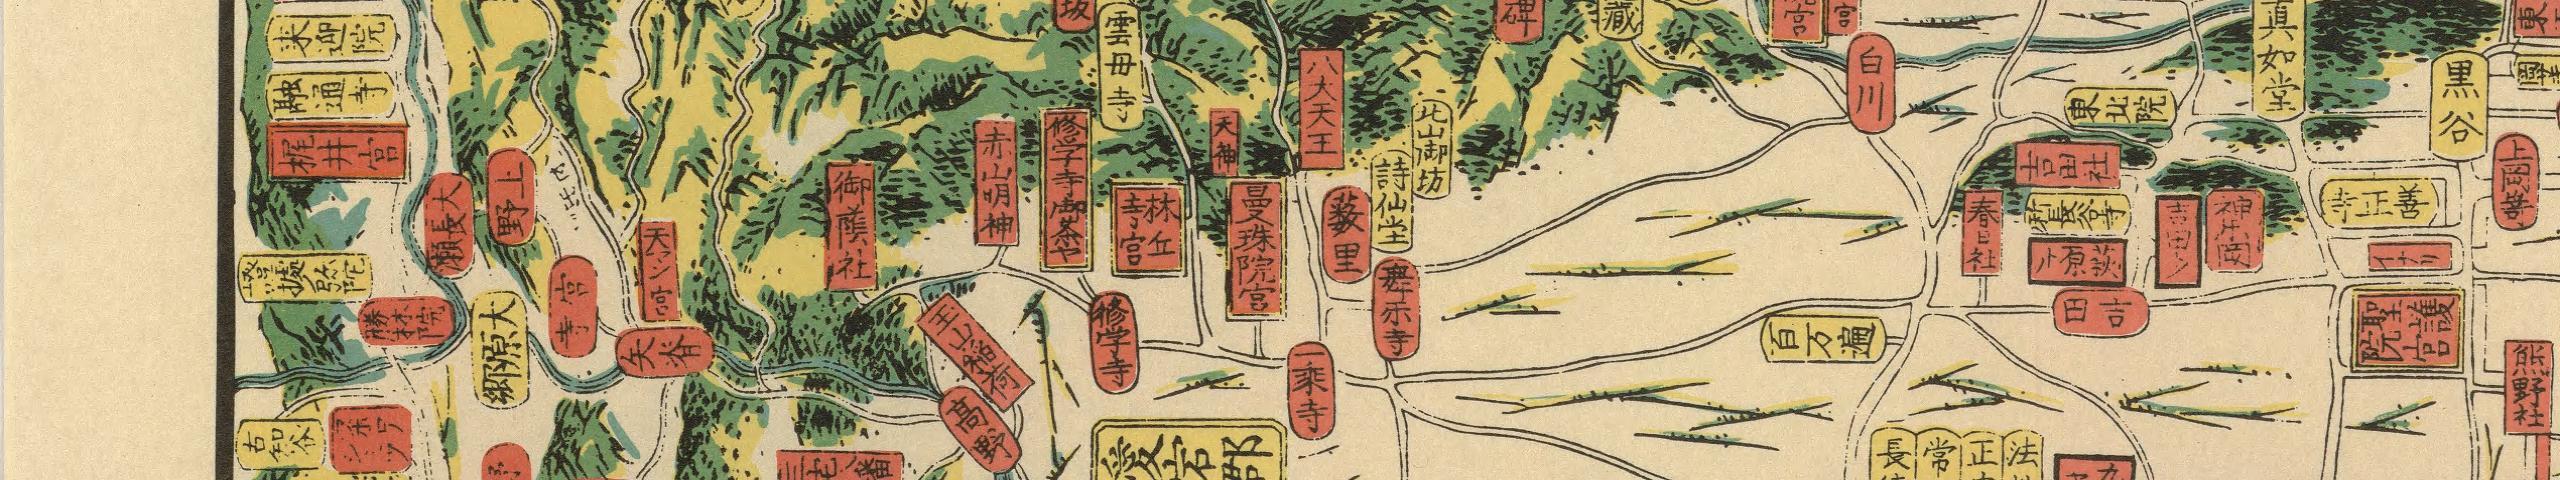 京都古地図